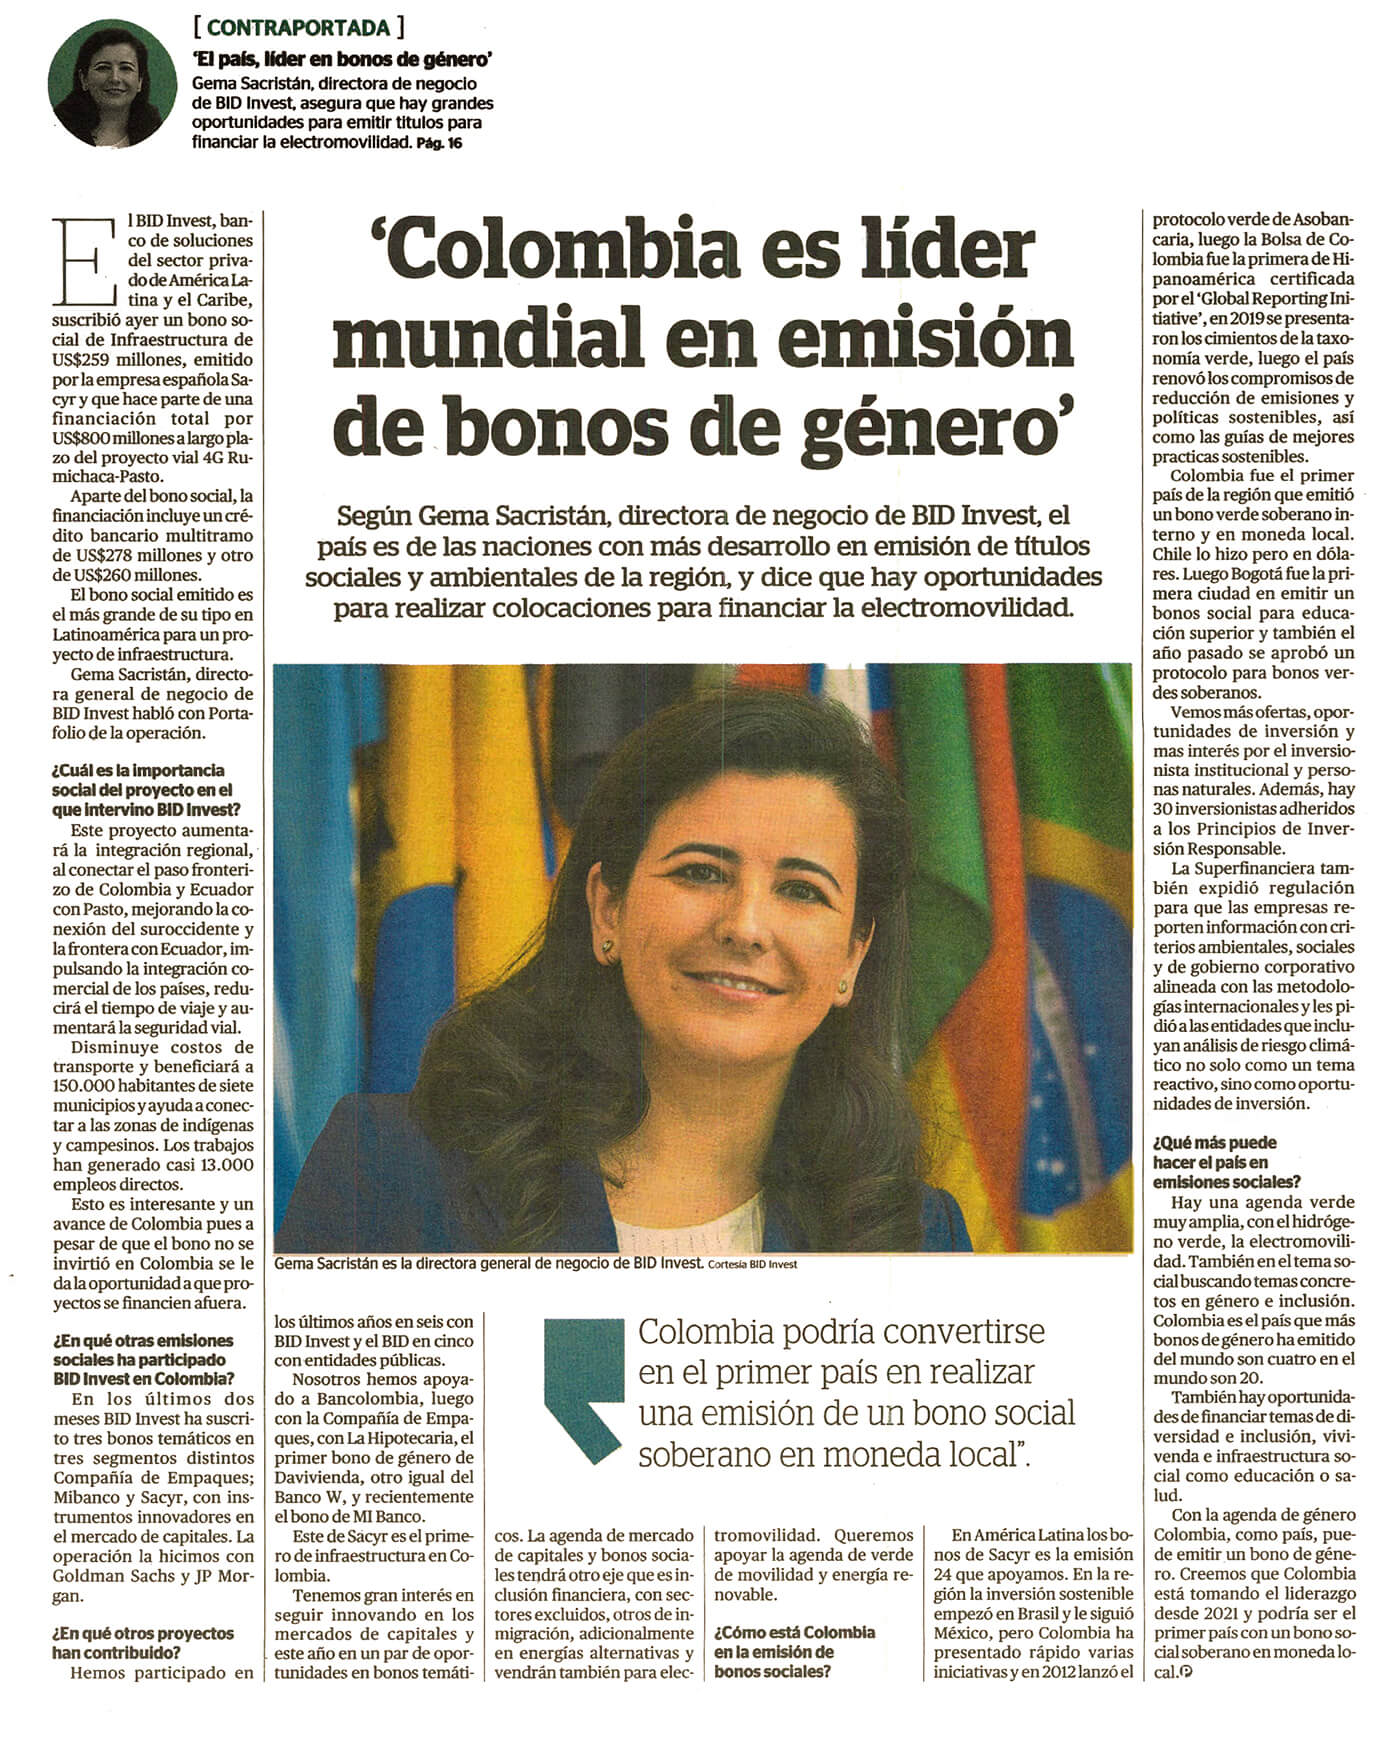 Colombia es líder mundial en emisión de bonos de género. Se destaca emisión de bonos sociales de género del Banco W.